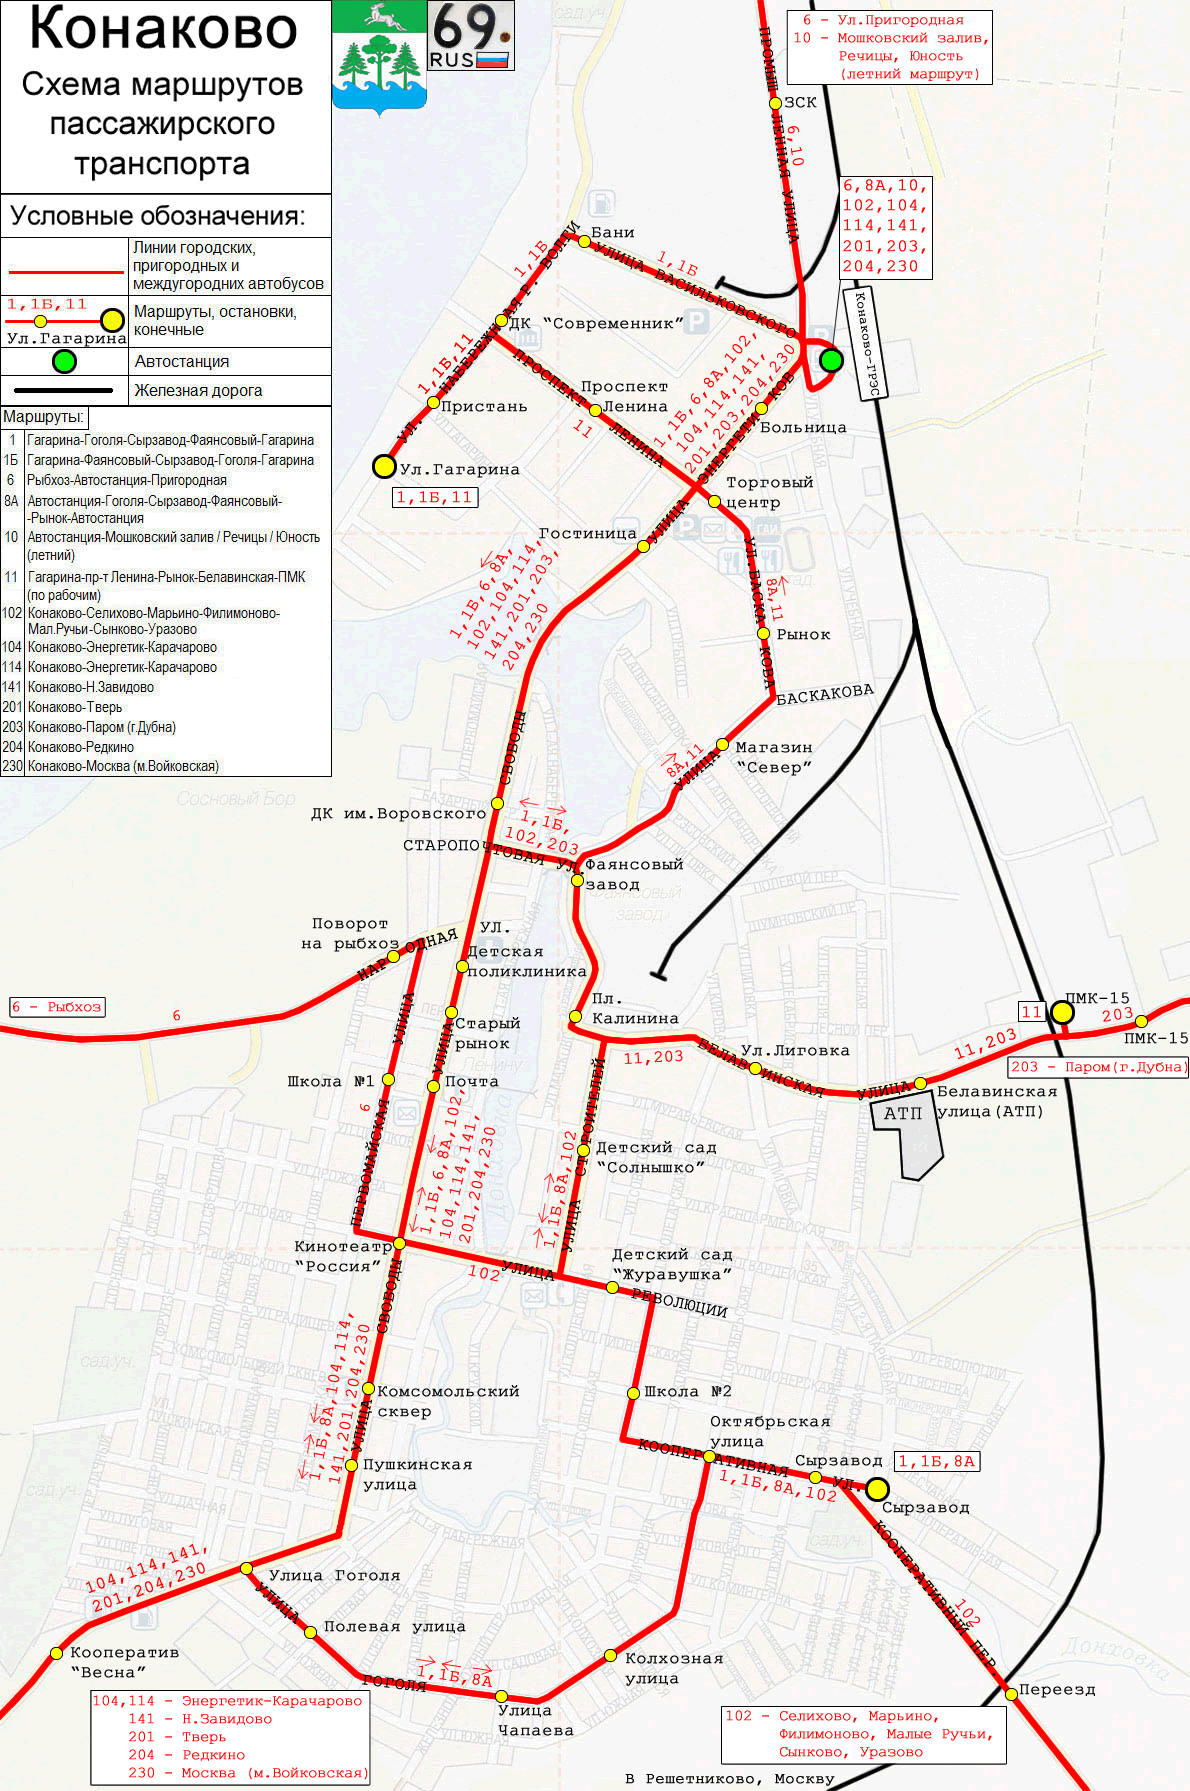 Konakovo — Maps; Maps routes